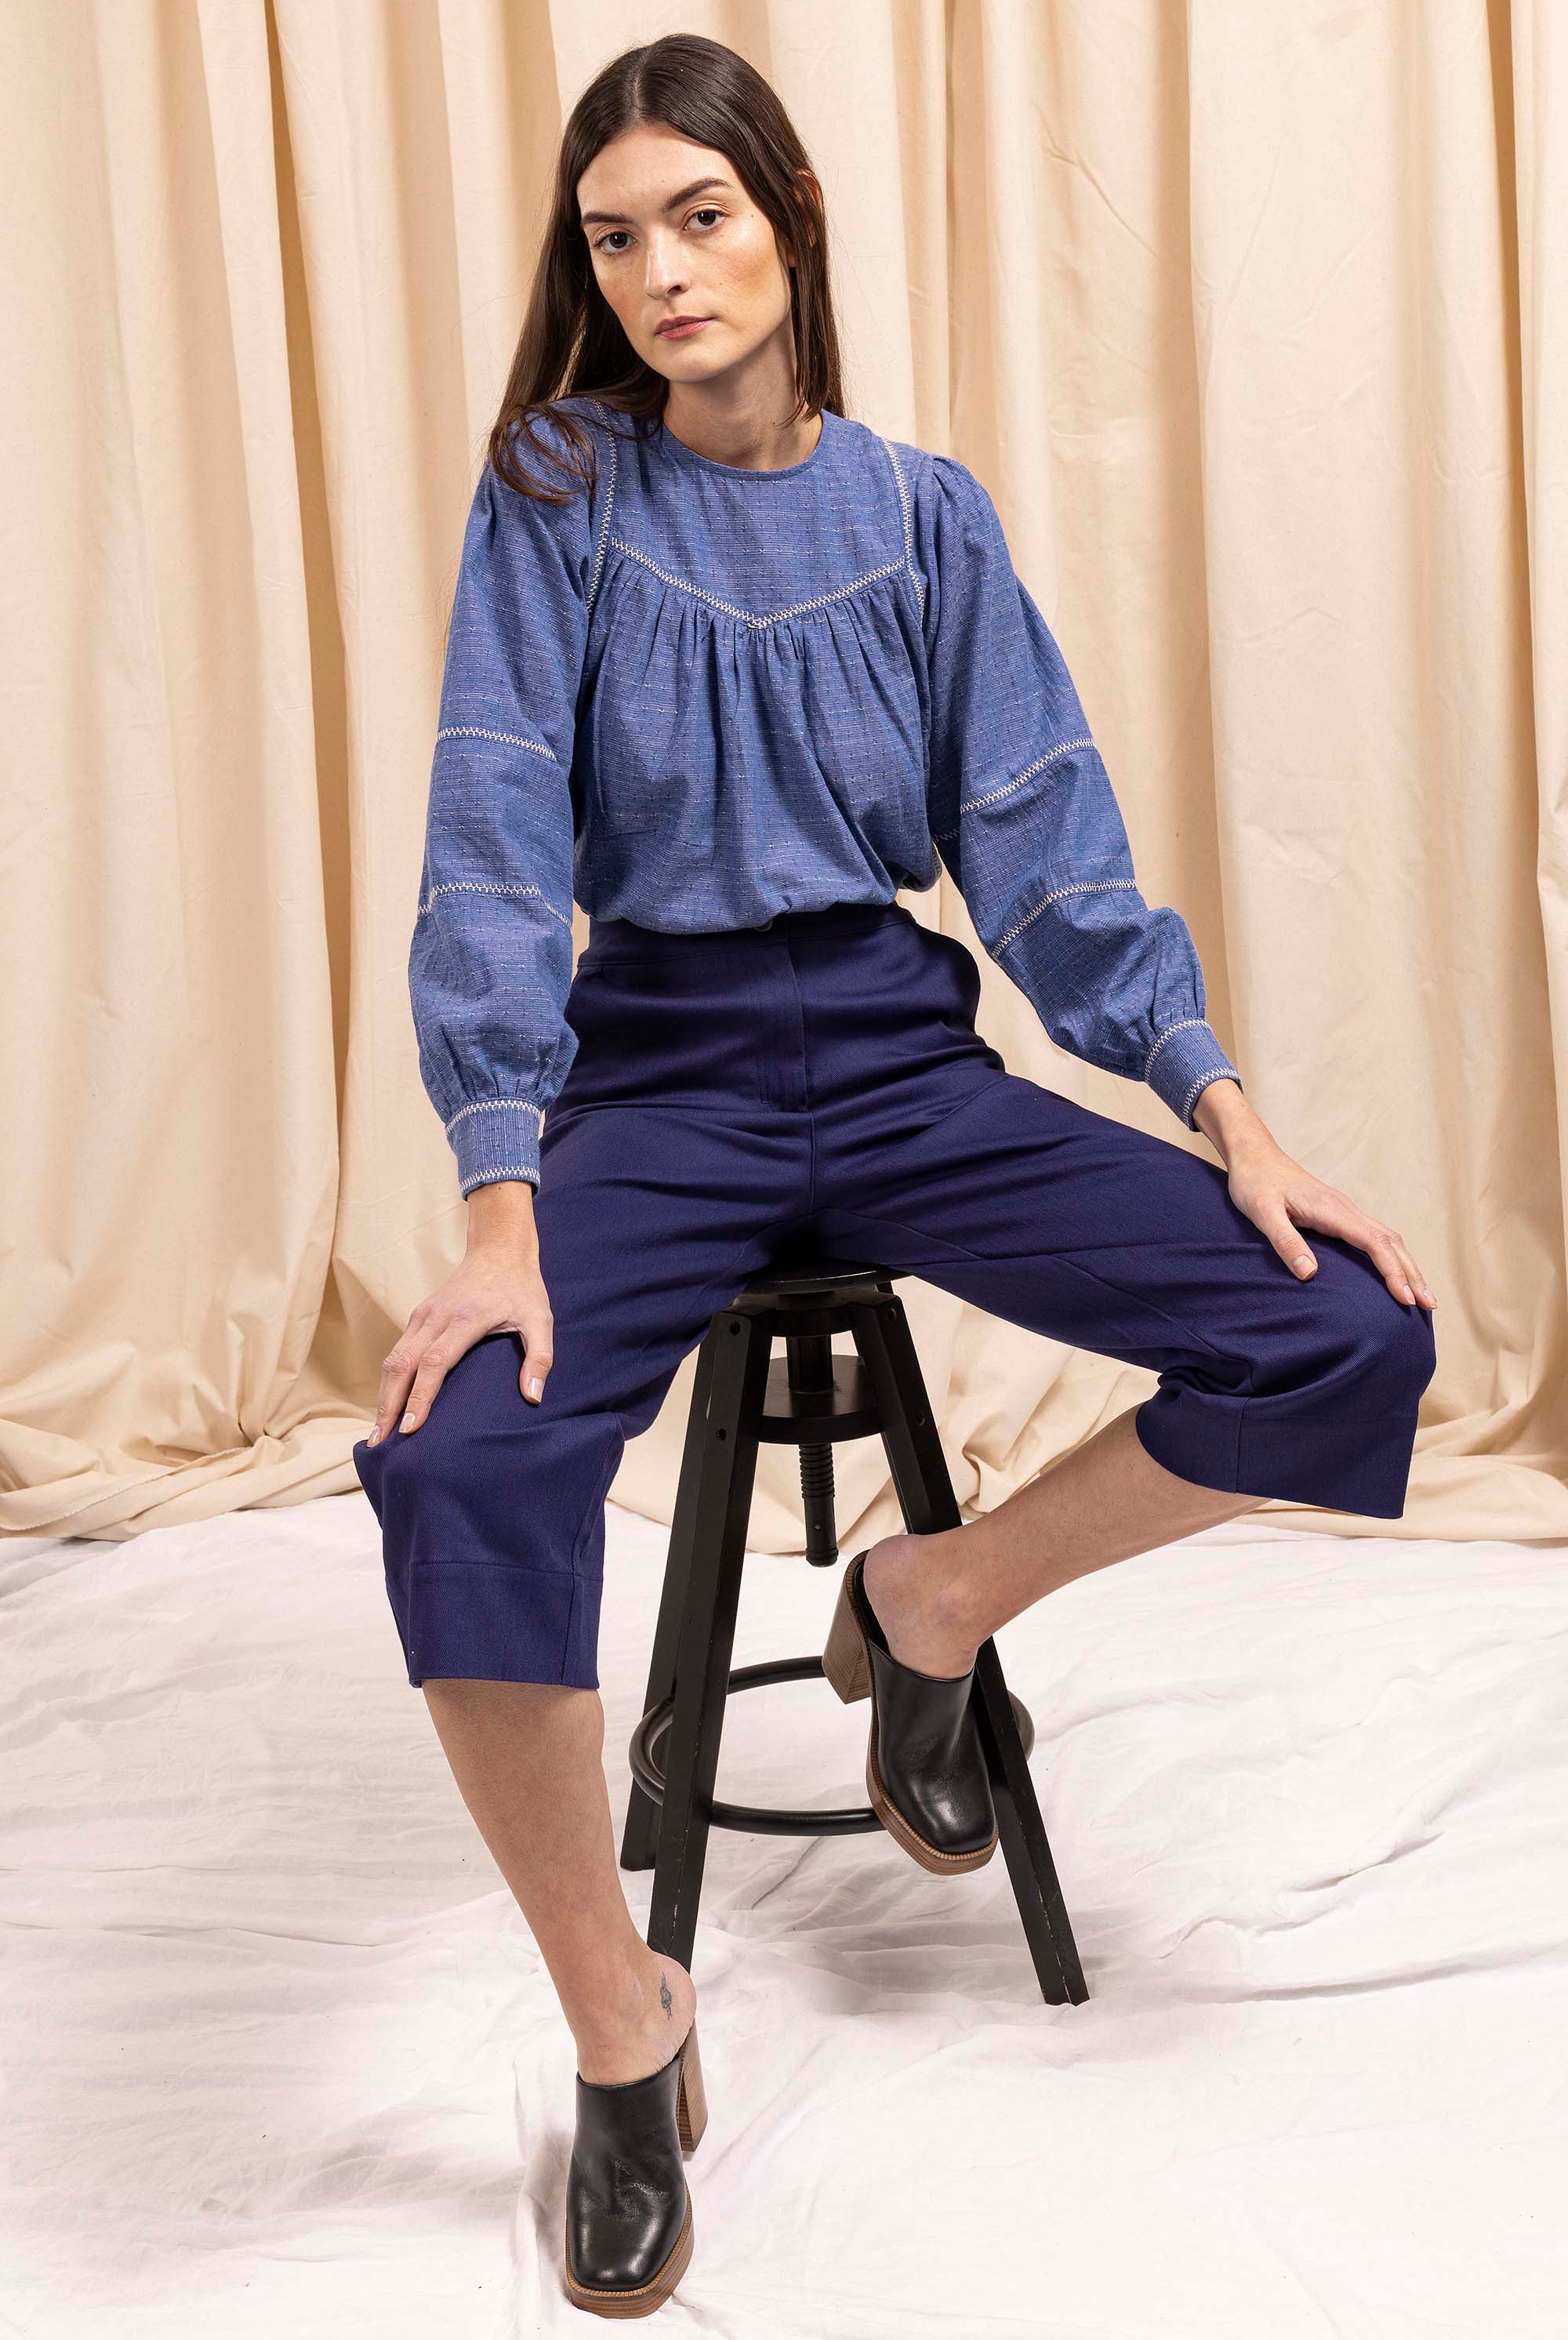 Pantalon Cristina Bleu Indigo parfaite alternative aux jeans, les pantalons en coton Misericordia sont uniques et confortables